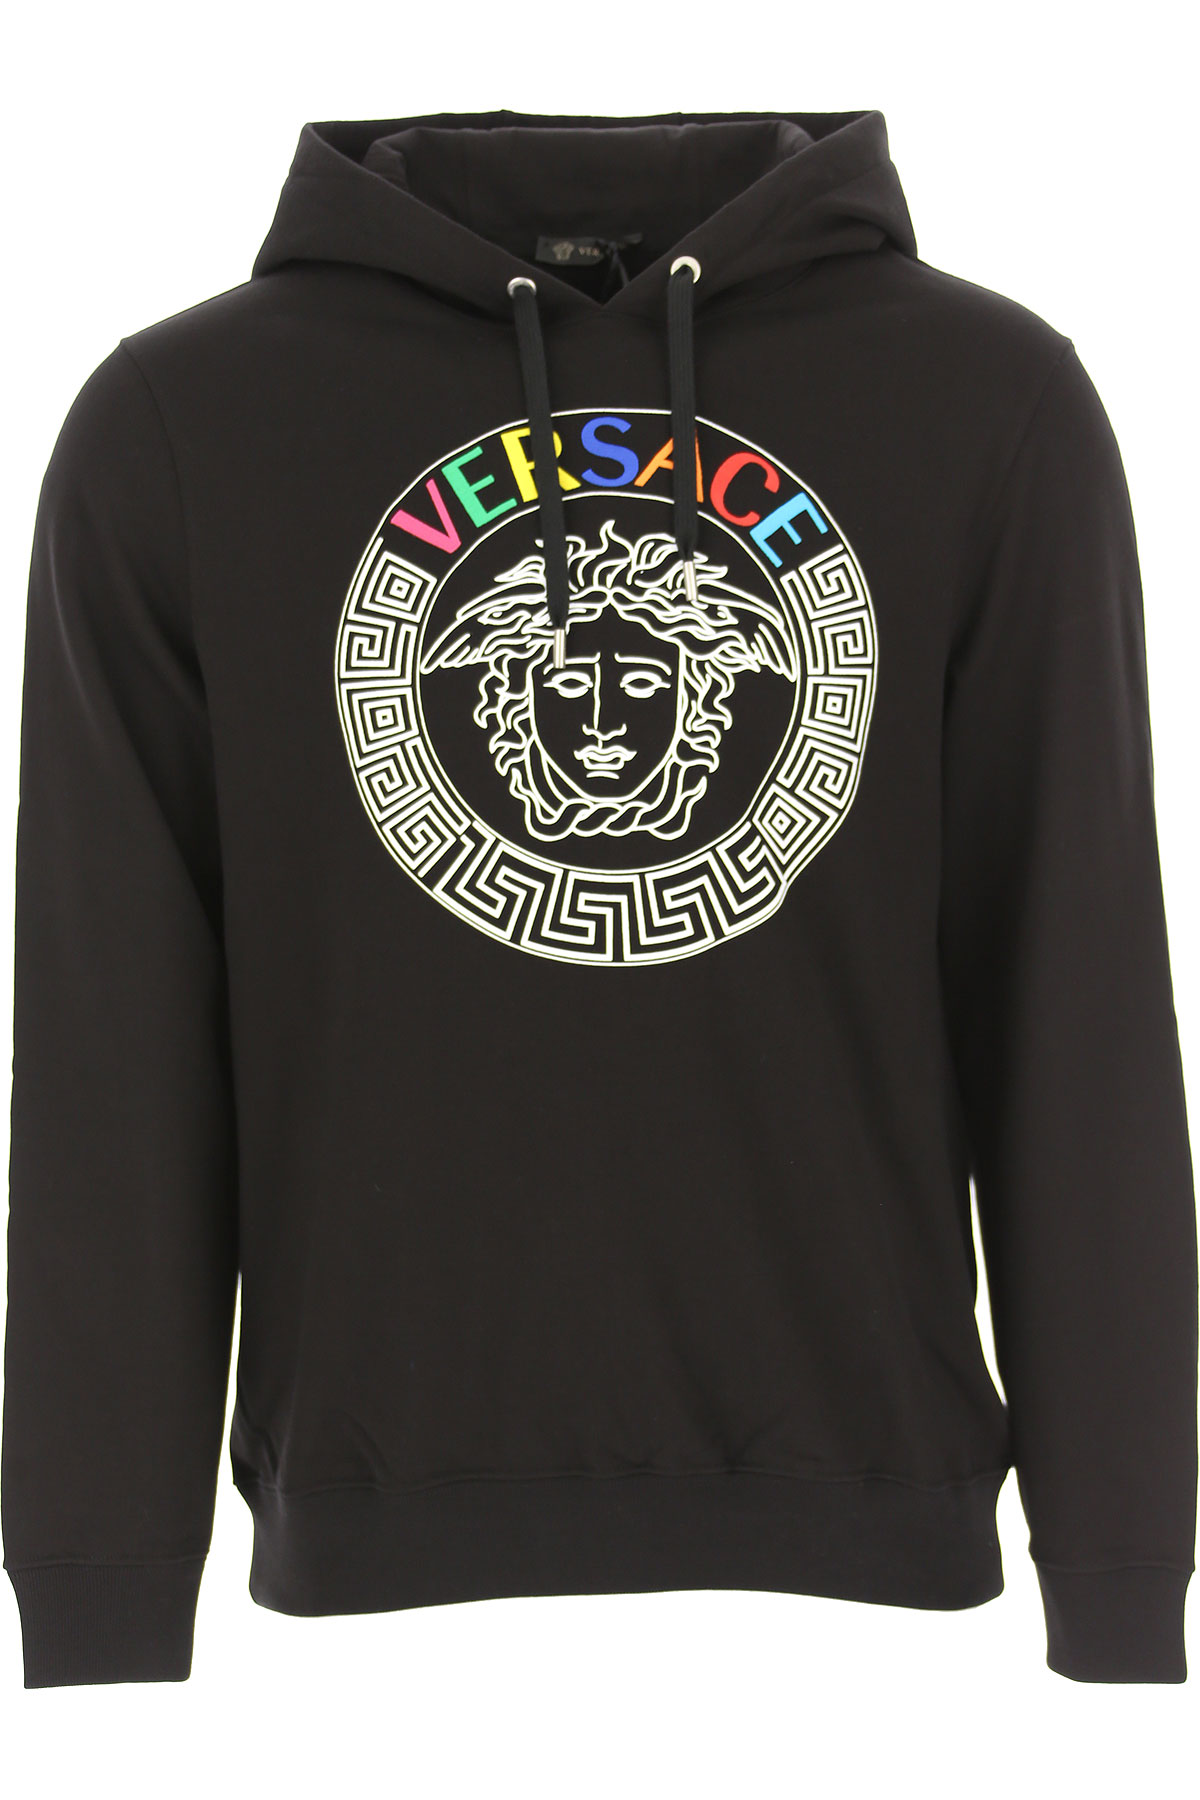 Versace Sweatshirt für Herren, Kapuzenpulli, Hoodie, Sweats Günstig im Sale, Schwarz, Baumwolle, 2017, L M S